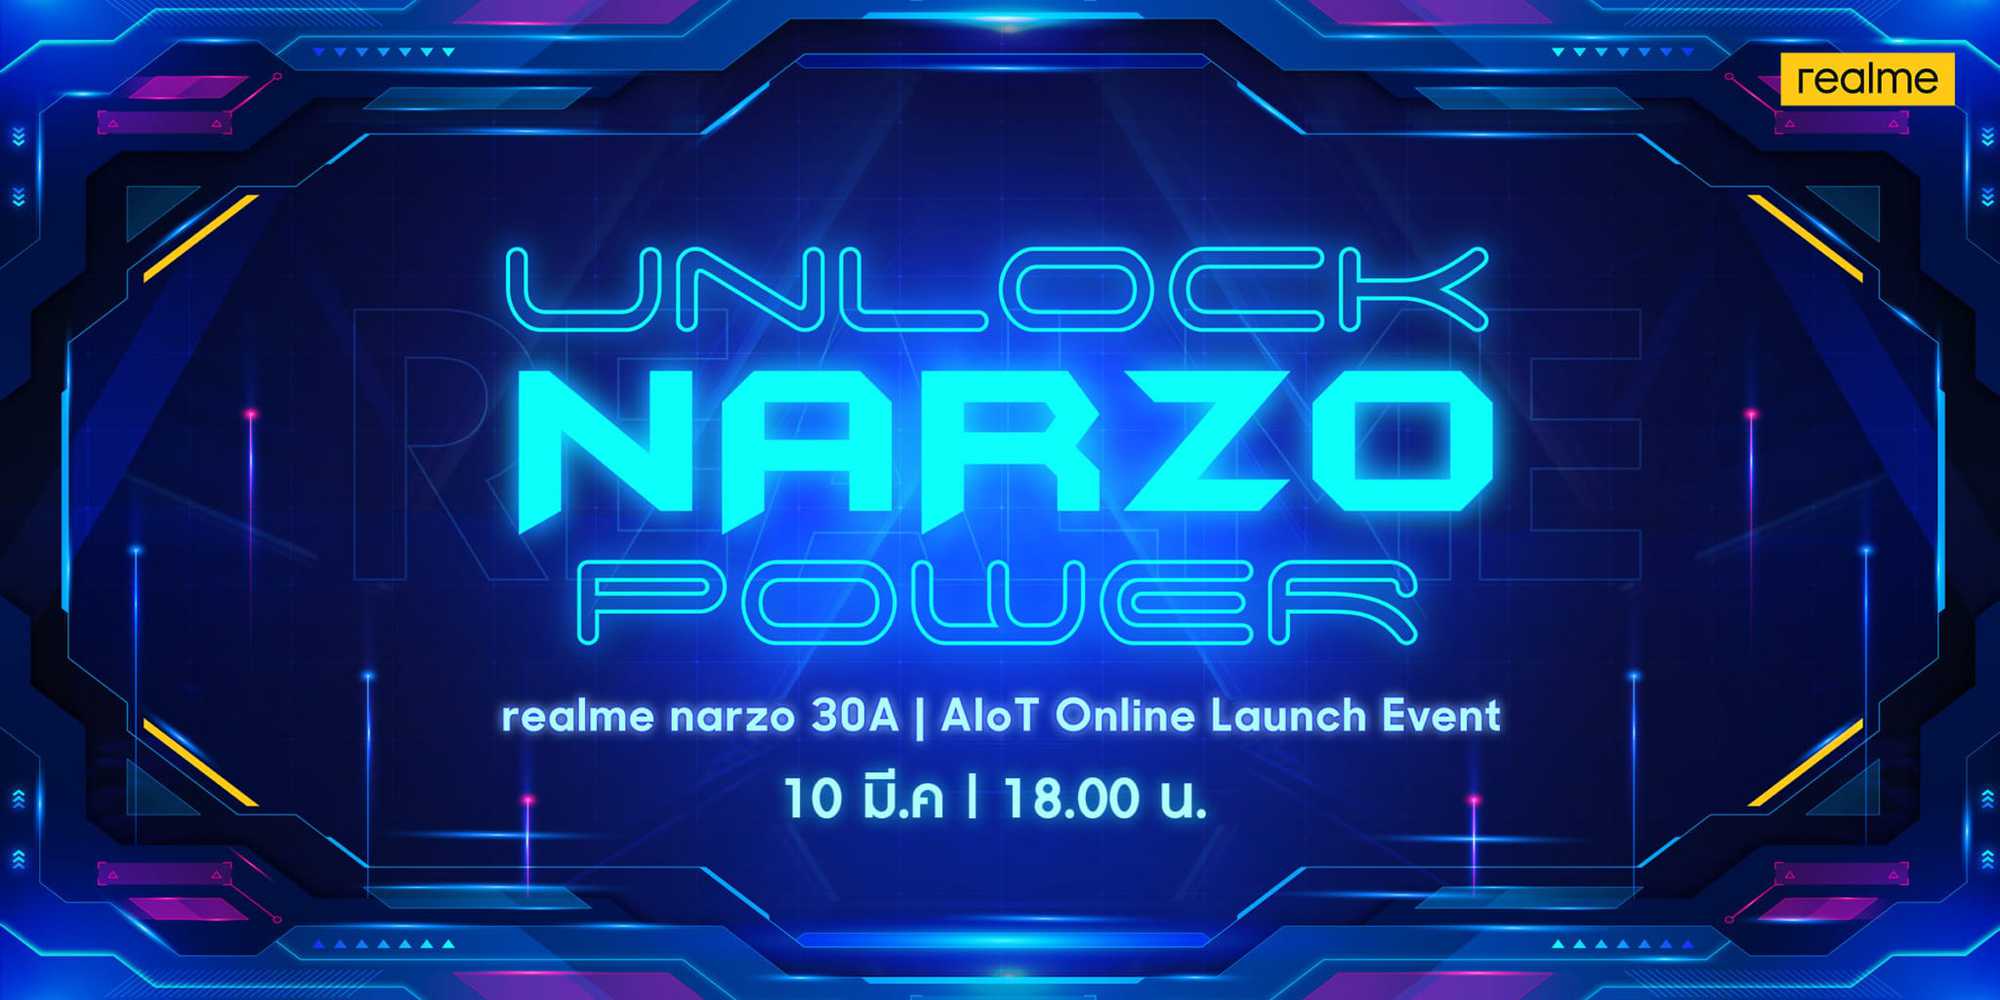 realme narzo 30A สมาร์ทโฟนชิปเซ็ตเกมมิ่งทรงพลัง เอาใจสายเกมโดยเฉพาะ พร้อมผลิตภัณฑ์ AIoT ใหม่ล่าสุด พบกันวันที่ 10มีนาคมนี้ 1